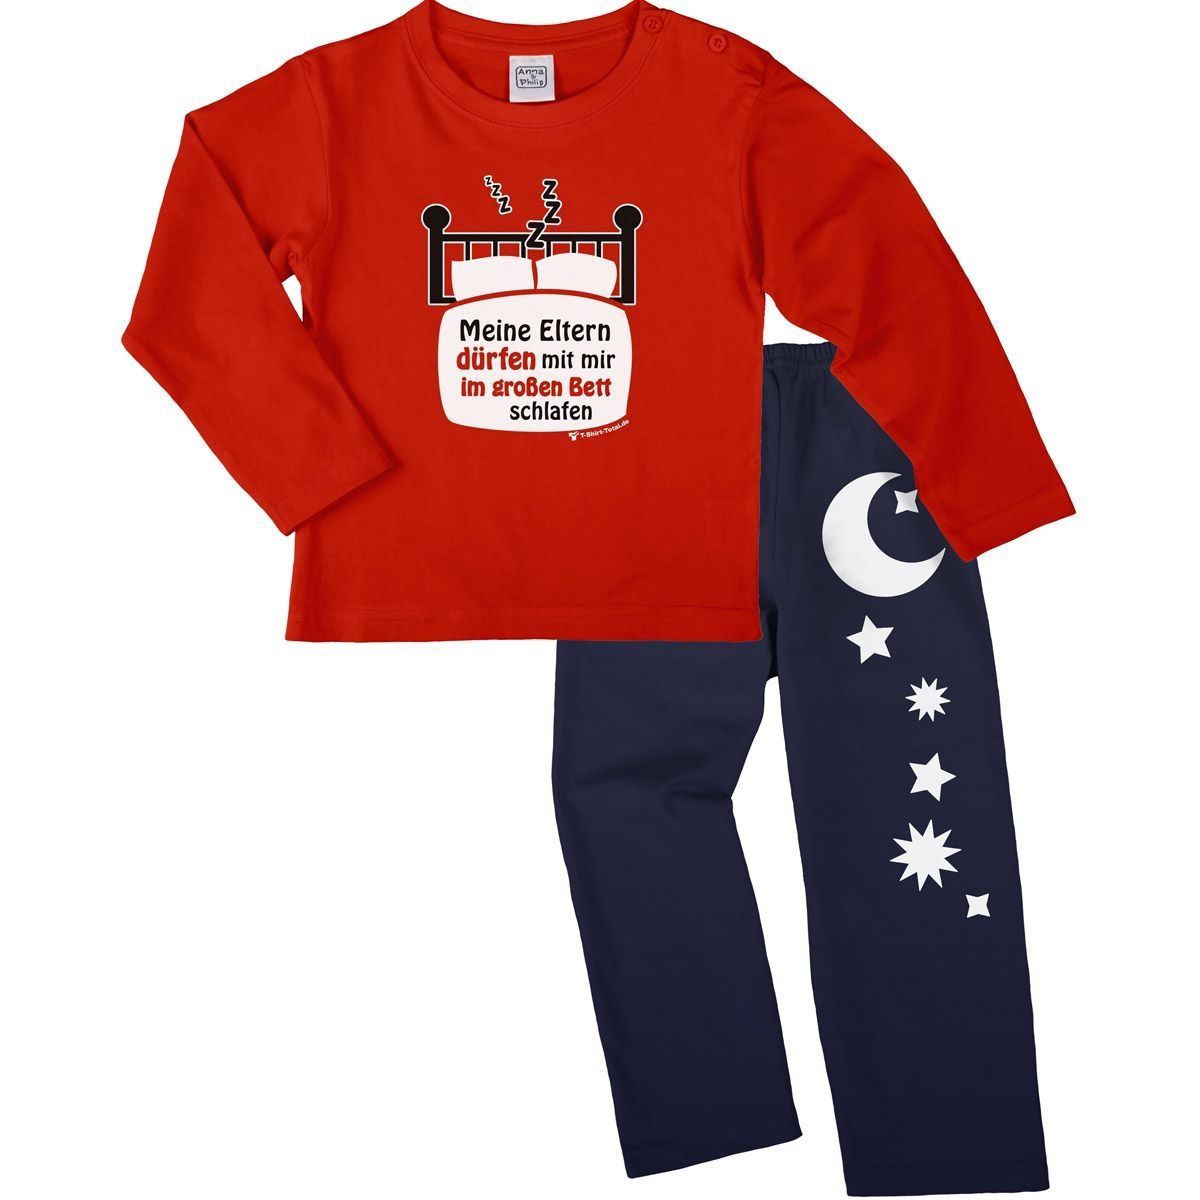 Im großen Bett schlafen Pyjama Set rot / navy 92